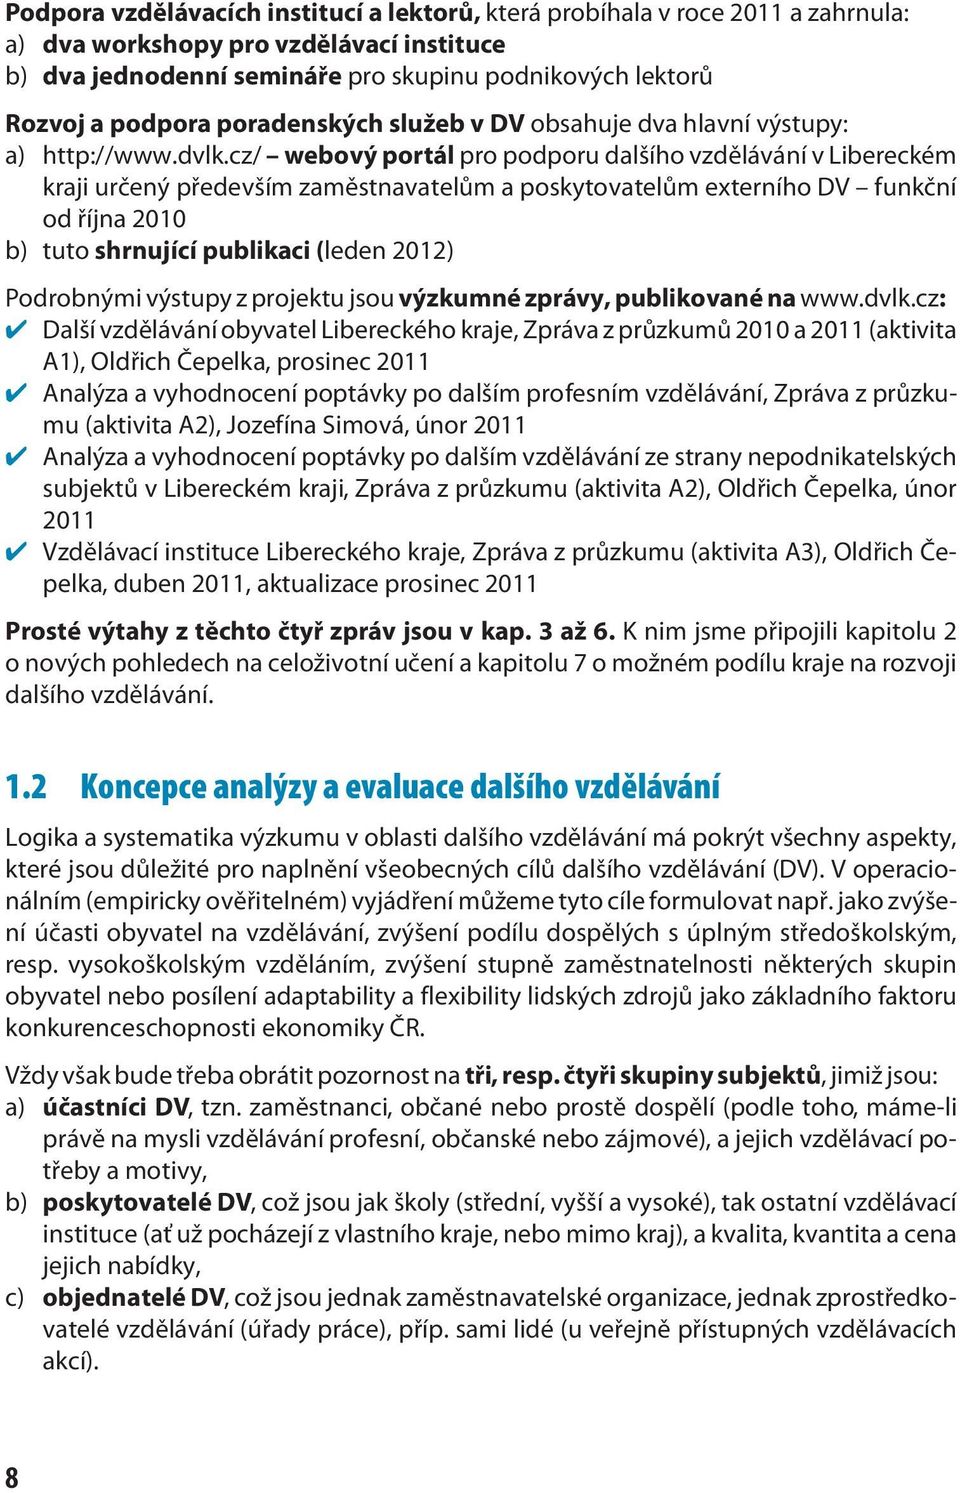 cz/ webový portál pro podporu dalšího vzdělávání v Libereckém kraji určený především zaměstnavatelům a poskytovatelům externího DV funkční od října 2010 b) tuto shrnující publikaci (leden 2012)